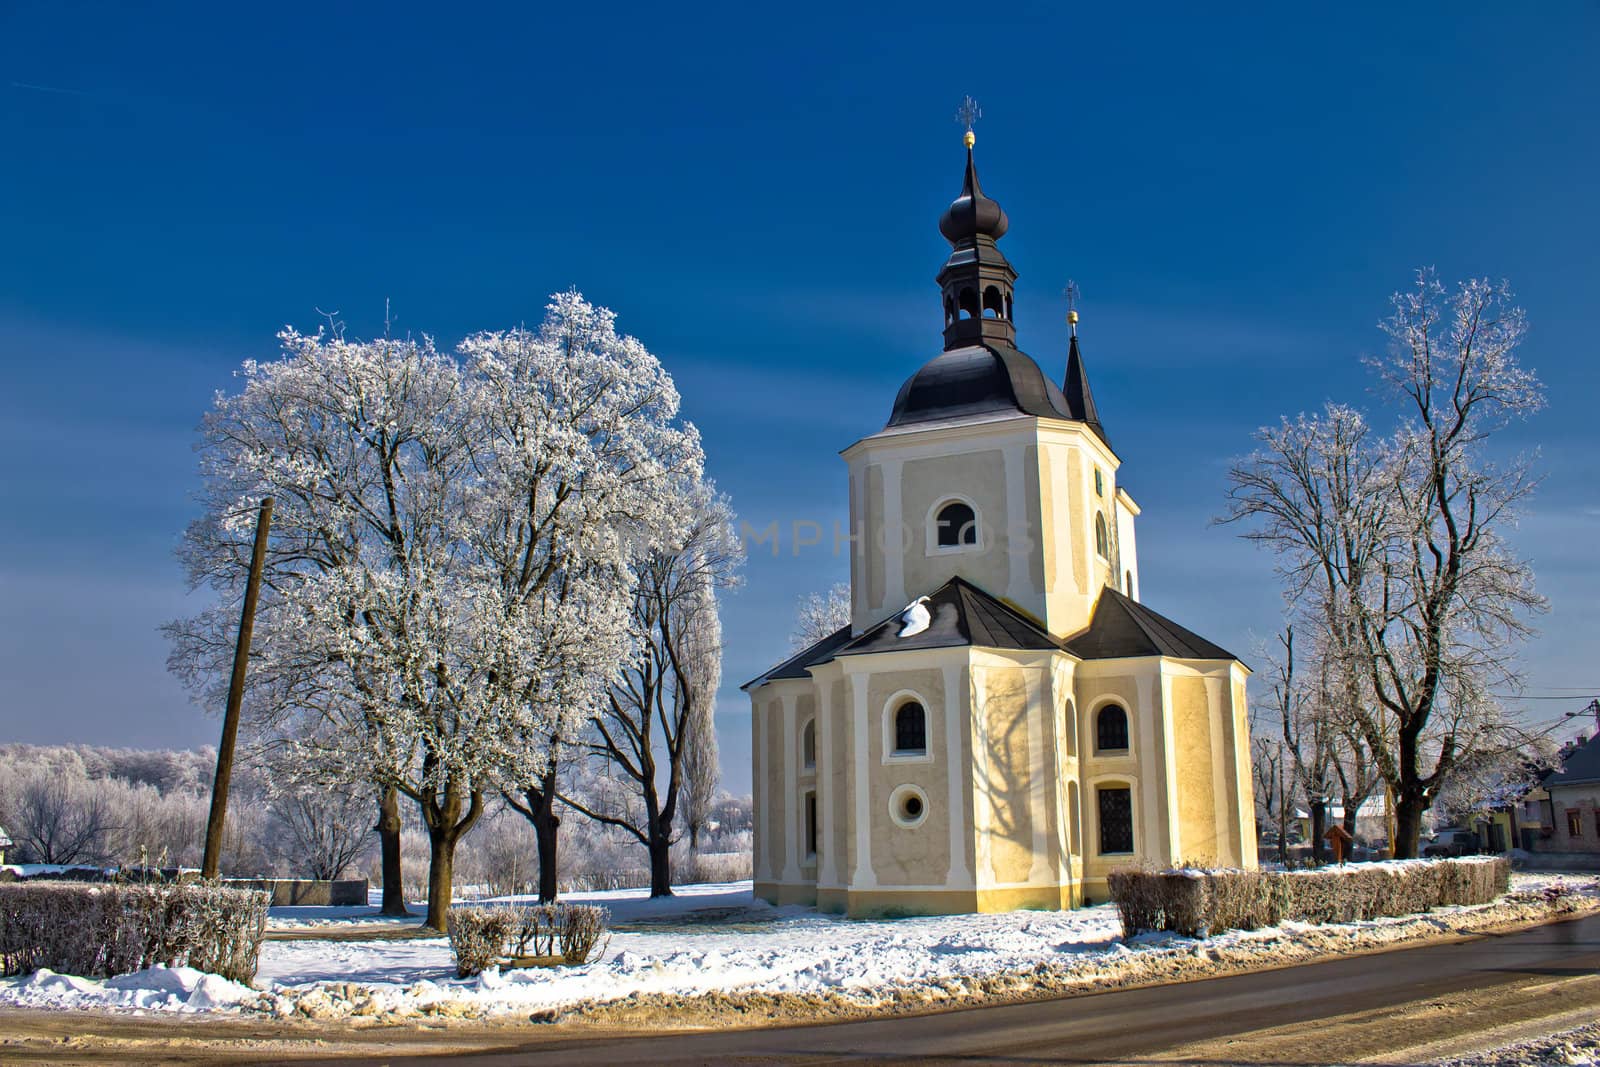 Catholic church in town of Krizevci by xbrchx